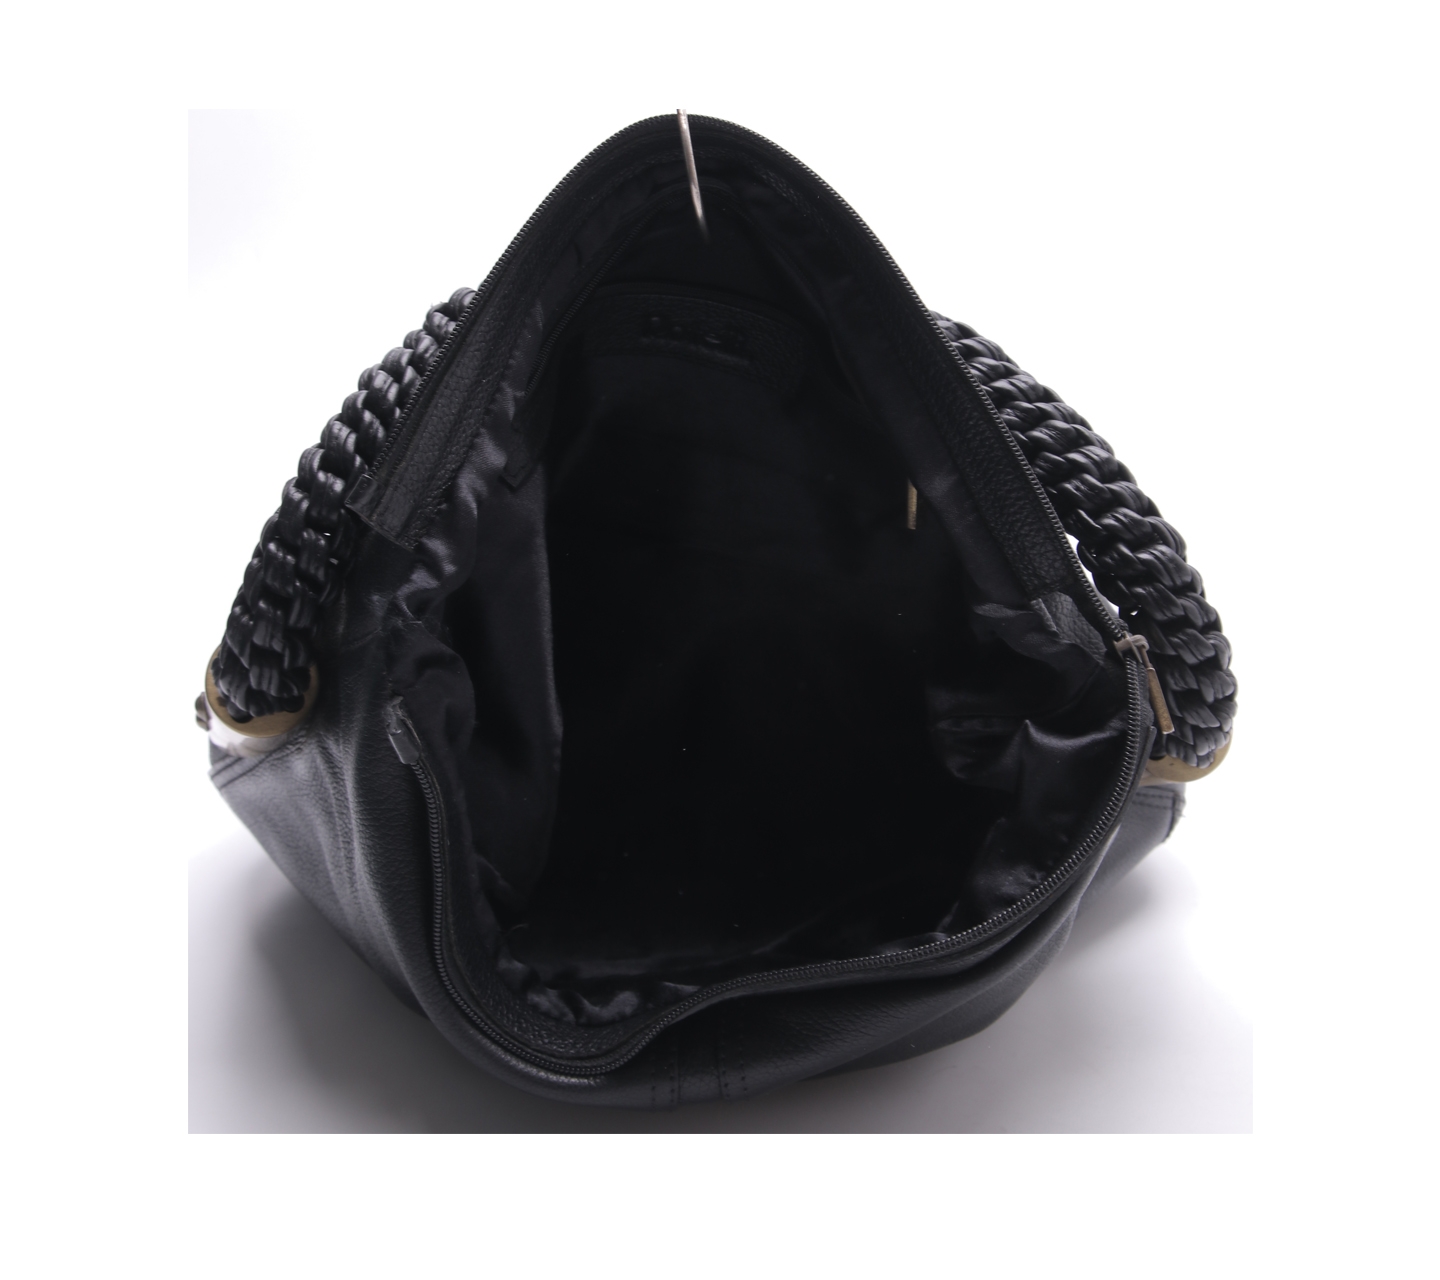 Rotelli Black Leather Shoulder Bag 